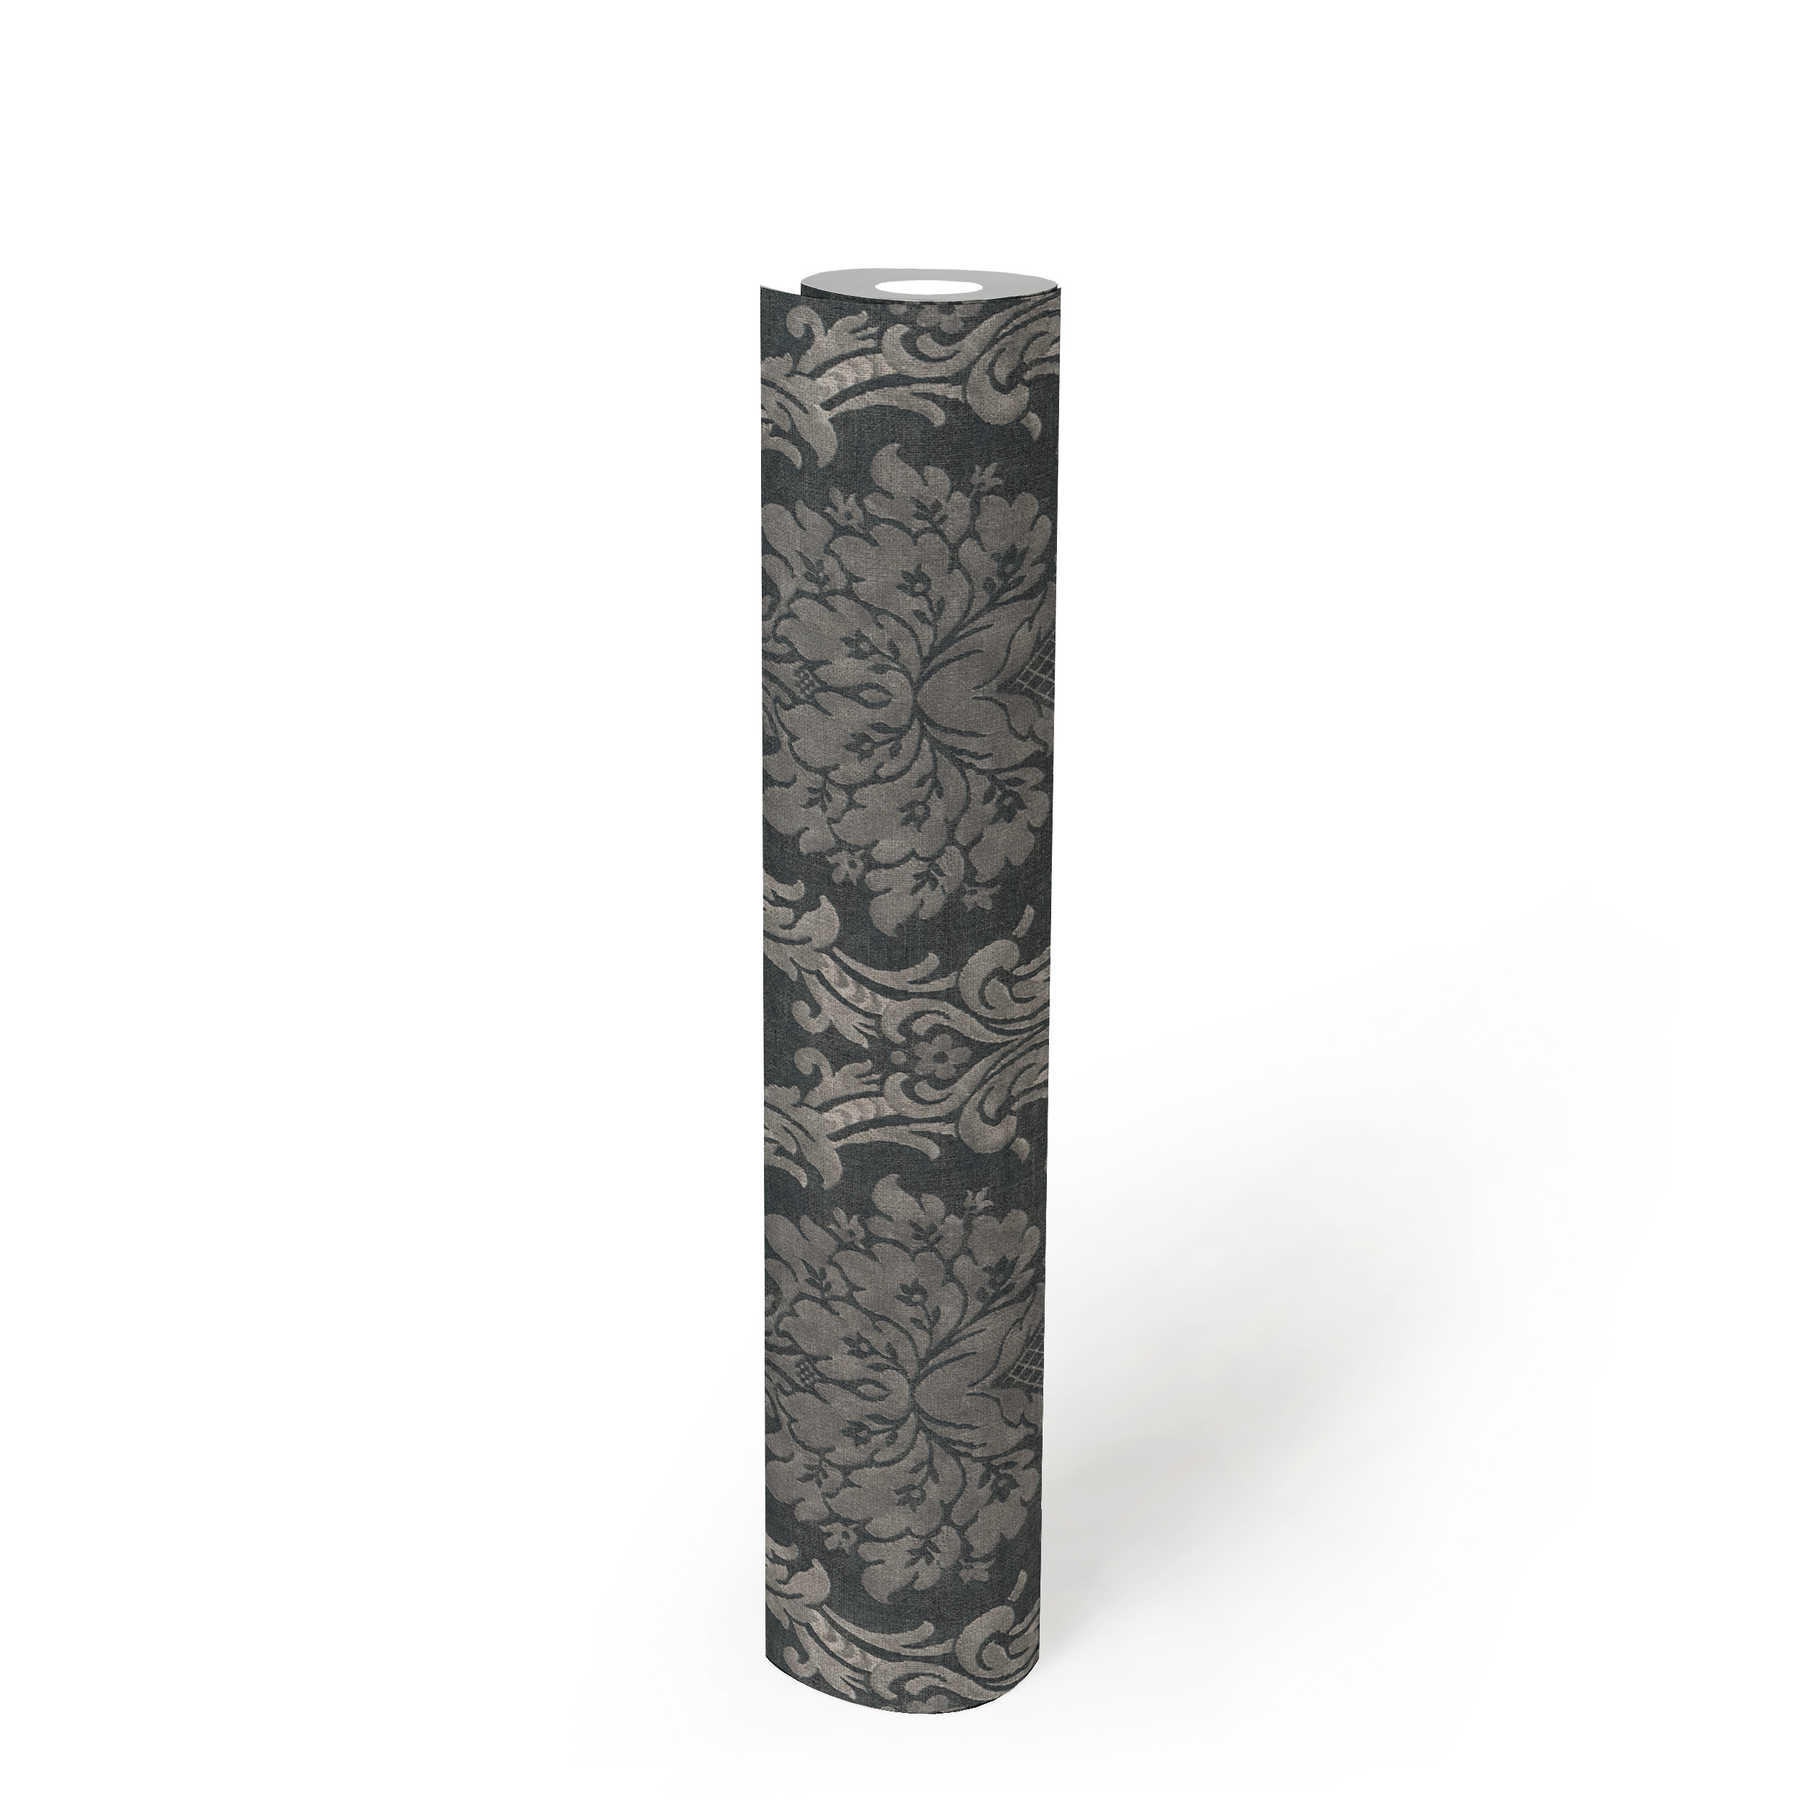             Carta da parati ornamentale con motivo floreale a cesto - grigio, nero
        